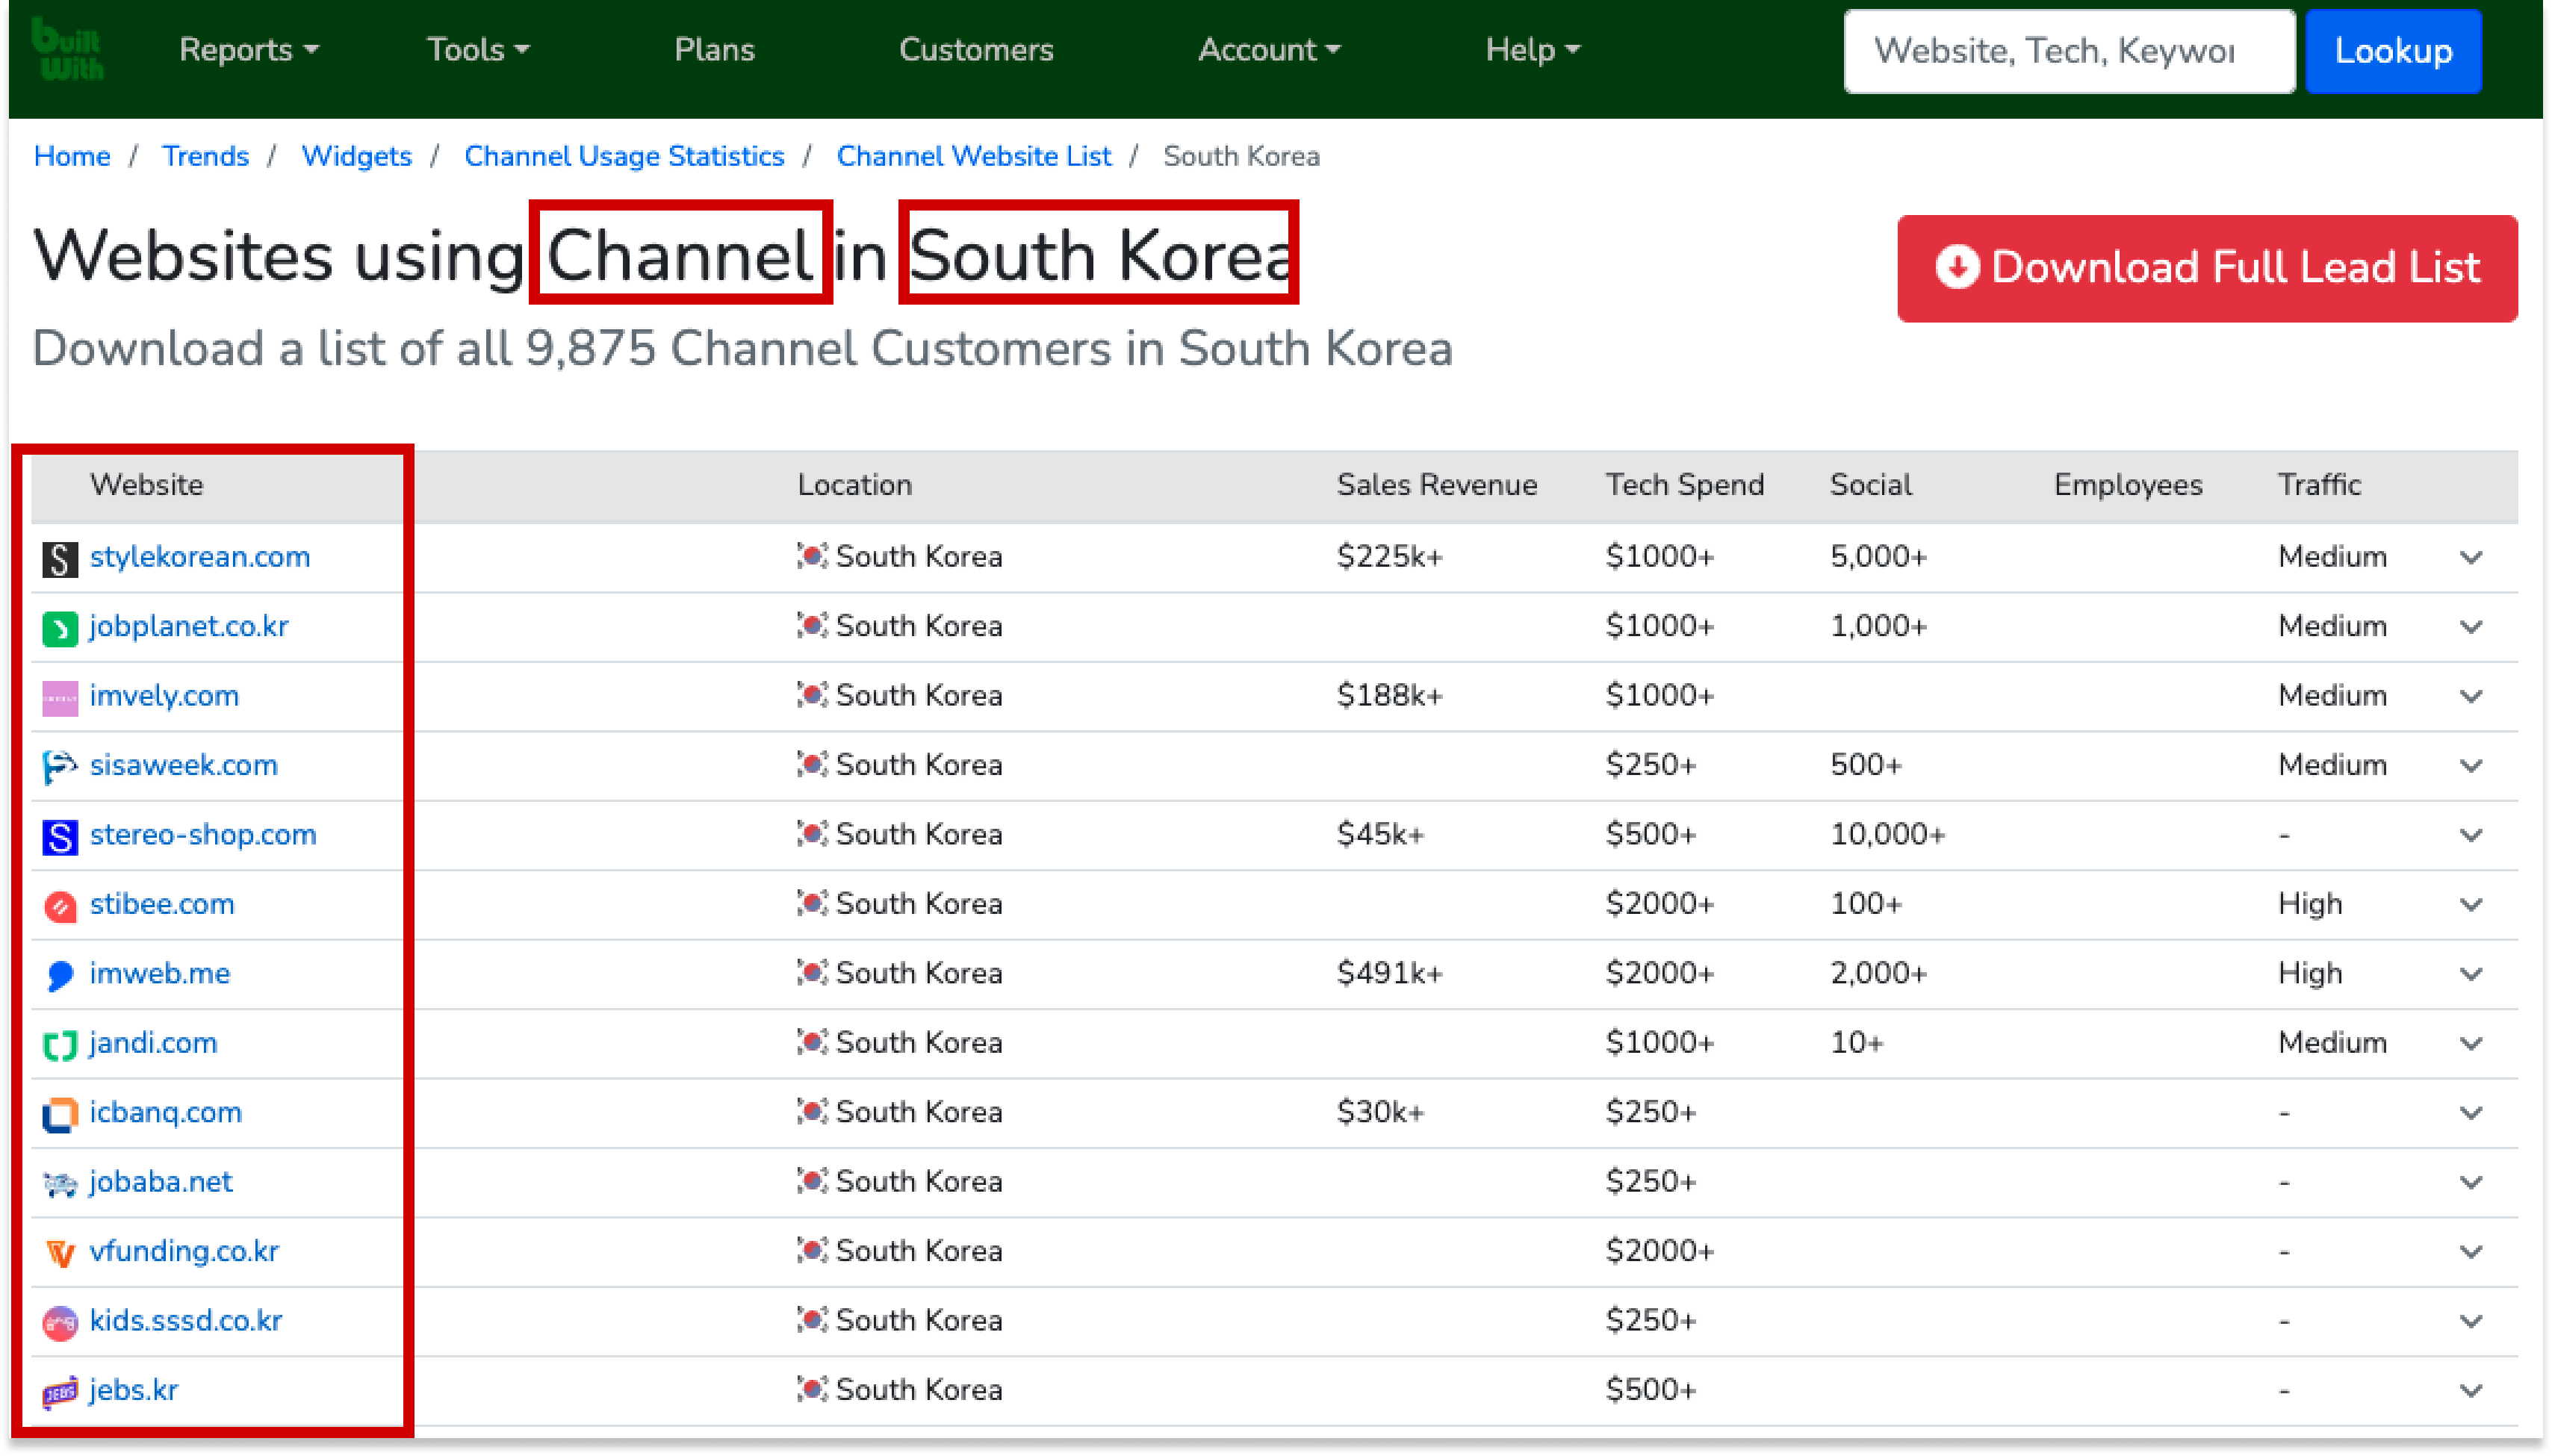 한국에서 채널톡을 사용하는 서비스들의 리스트. 모든 서비스를 보기 위해서는 유료 결제를 해야한다.